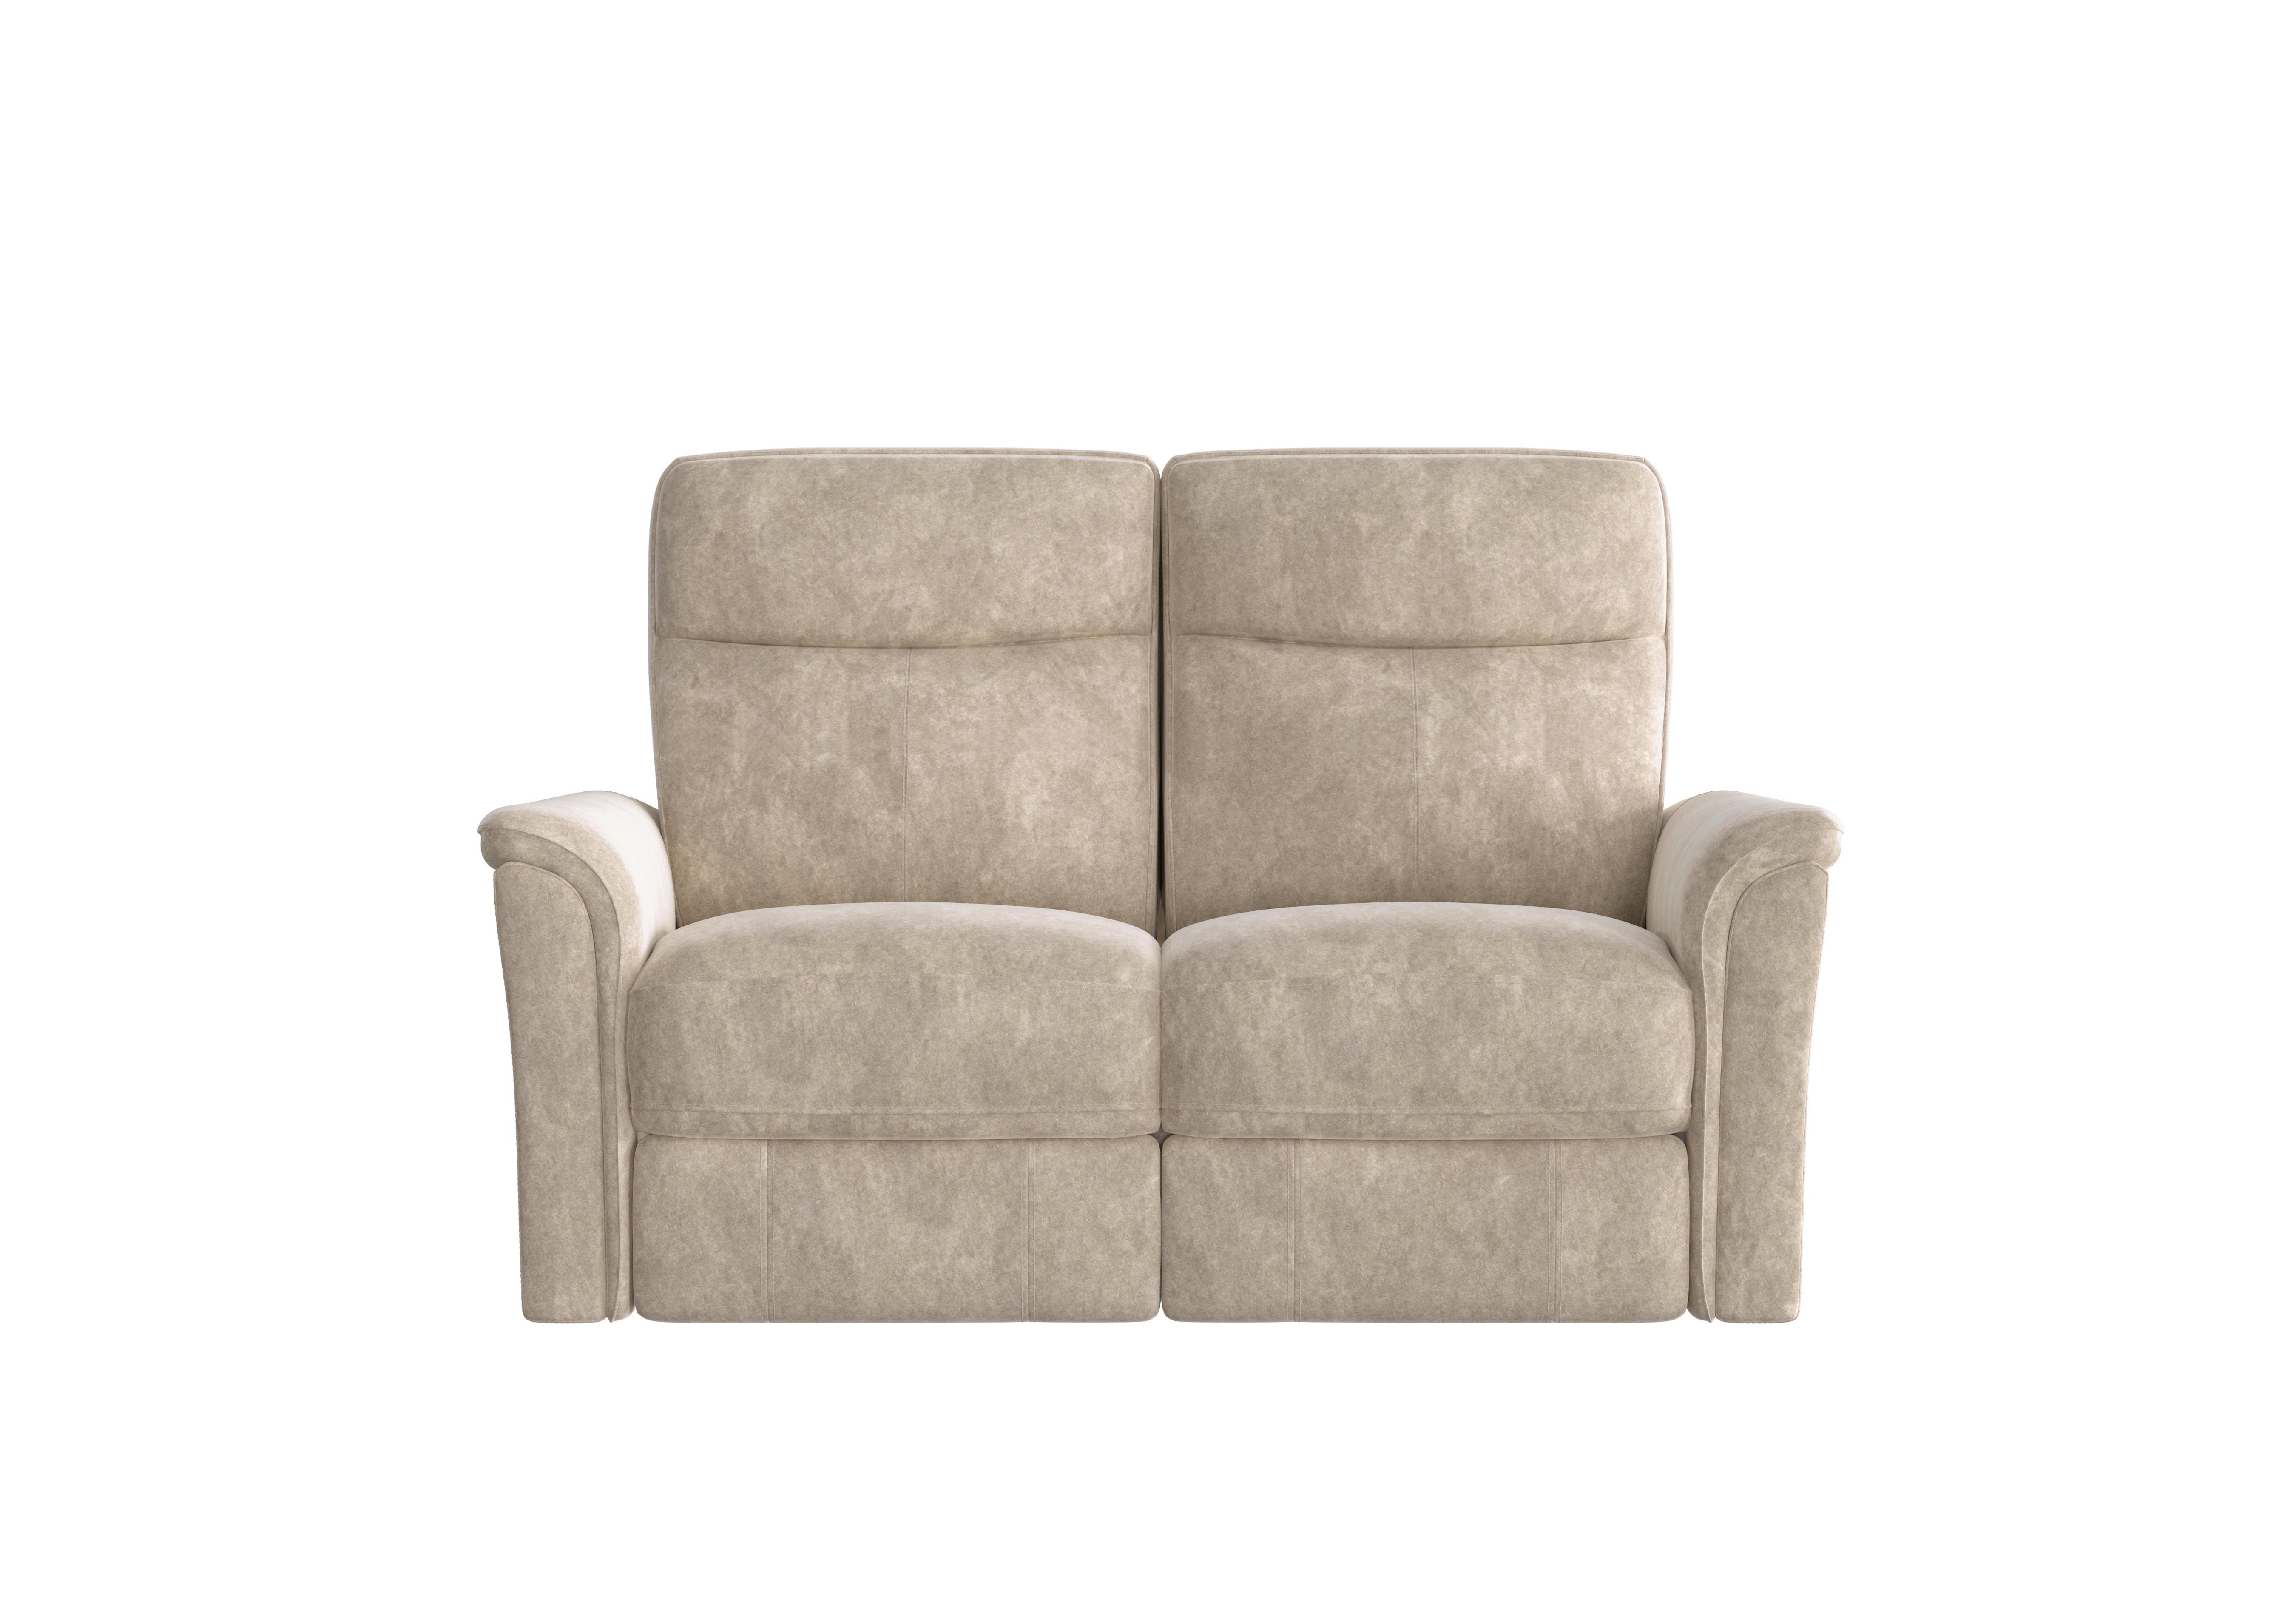 Piccolo 2 Seater Fabric Sofa in Bfa-Bnn-R26 Fv2 Cream on Furniture Village